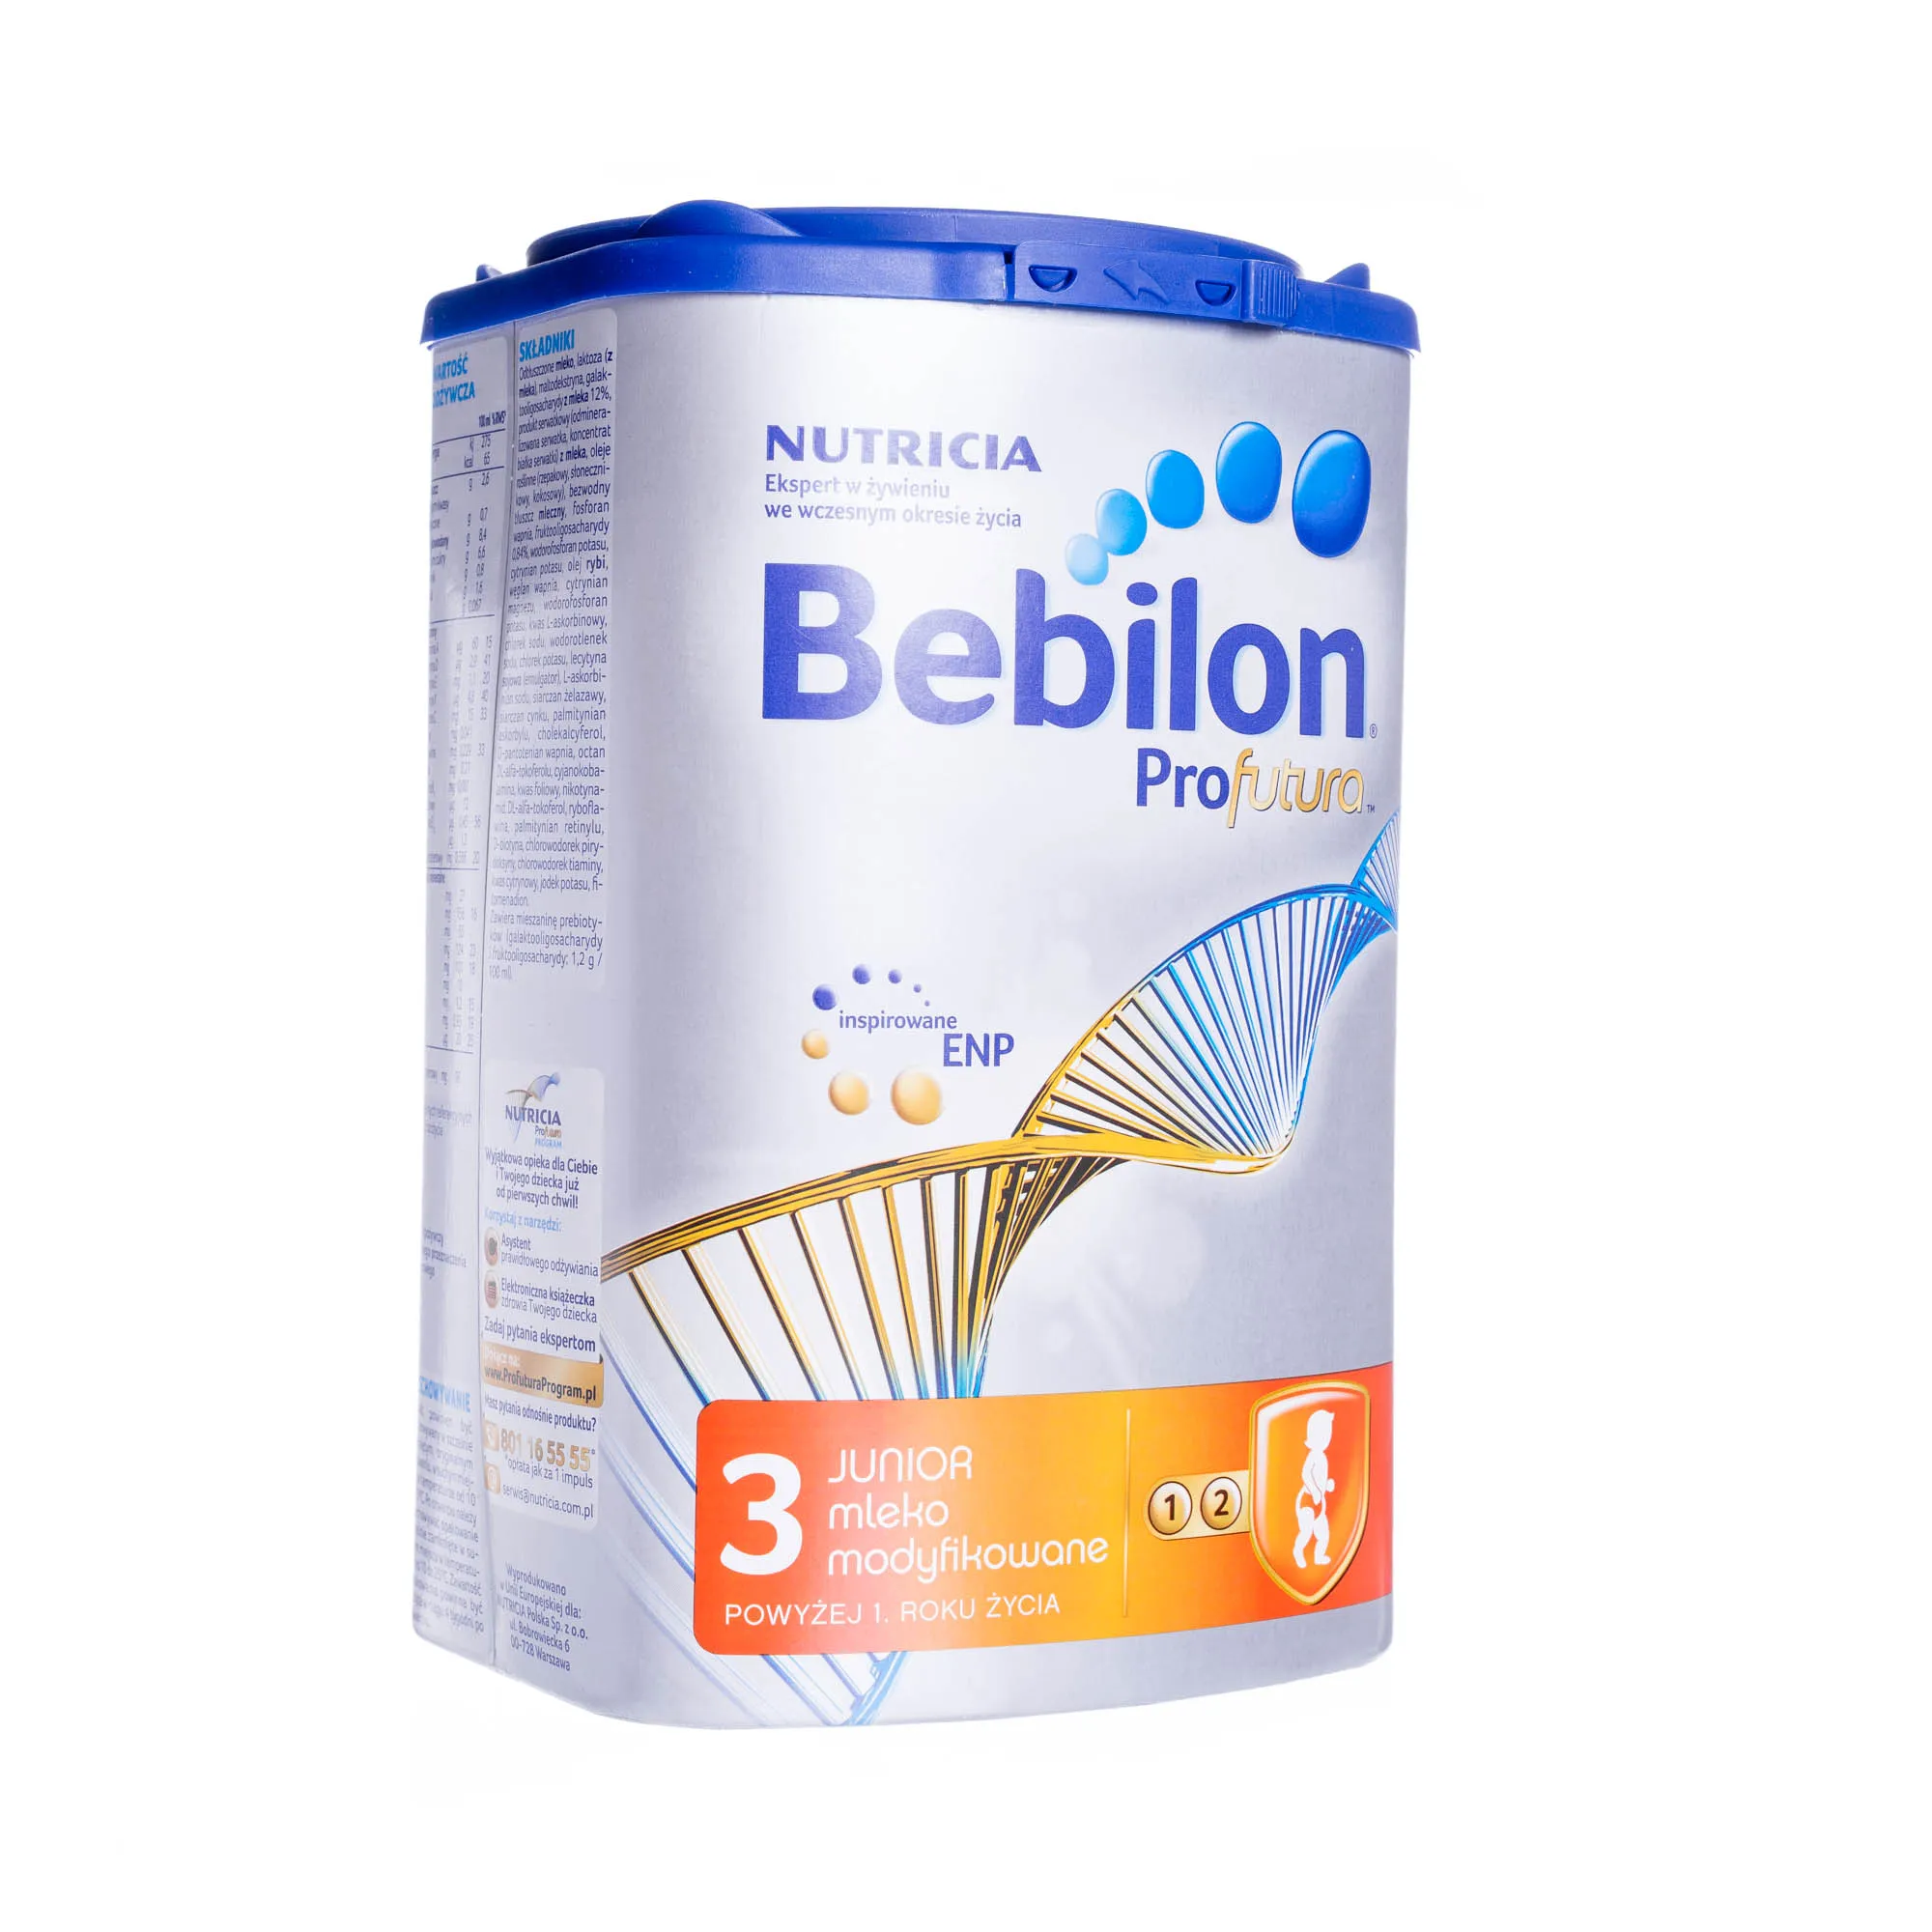 Bebilon Profutura Junior 3, mleko modyfikowane, 800g